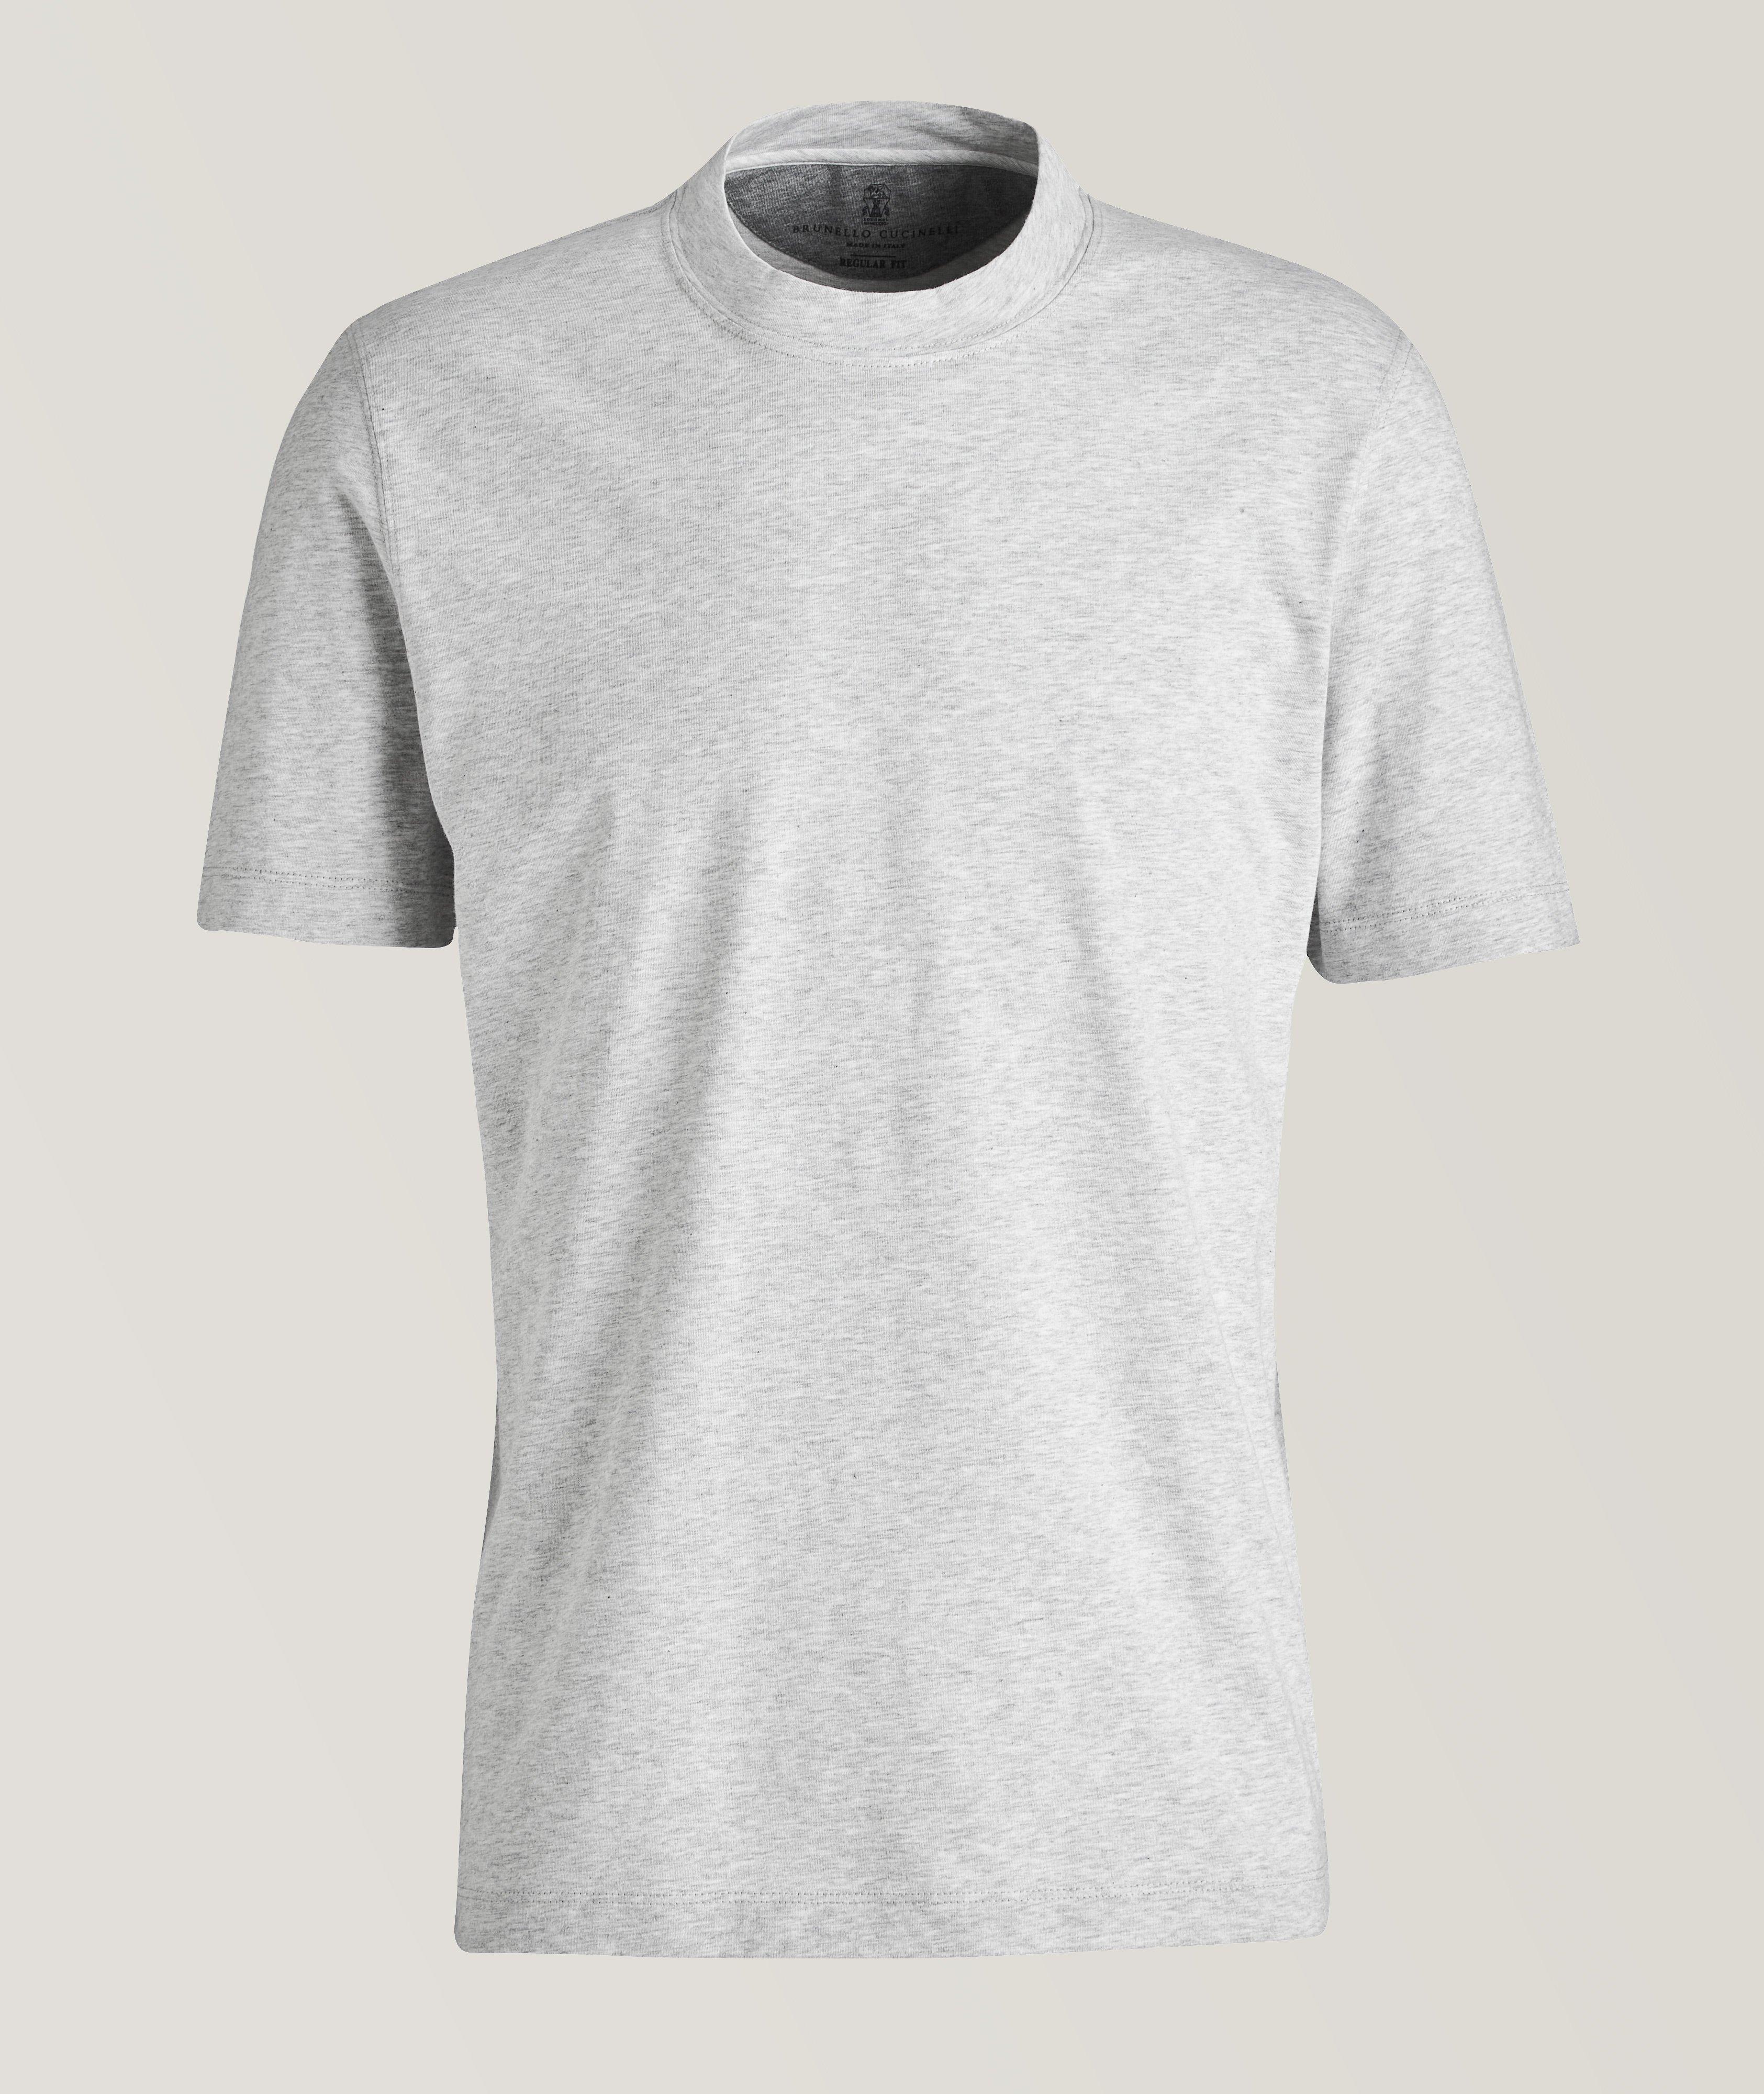 T-shirt en coton à encolure ronde image 0